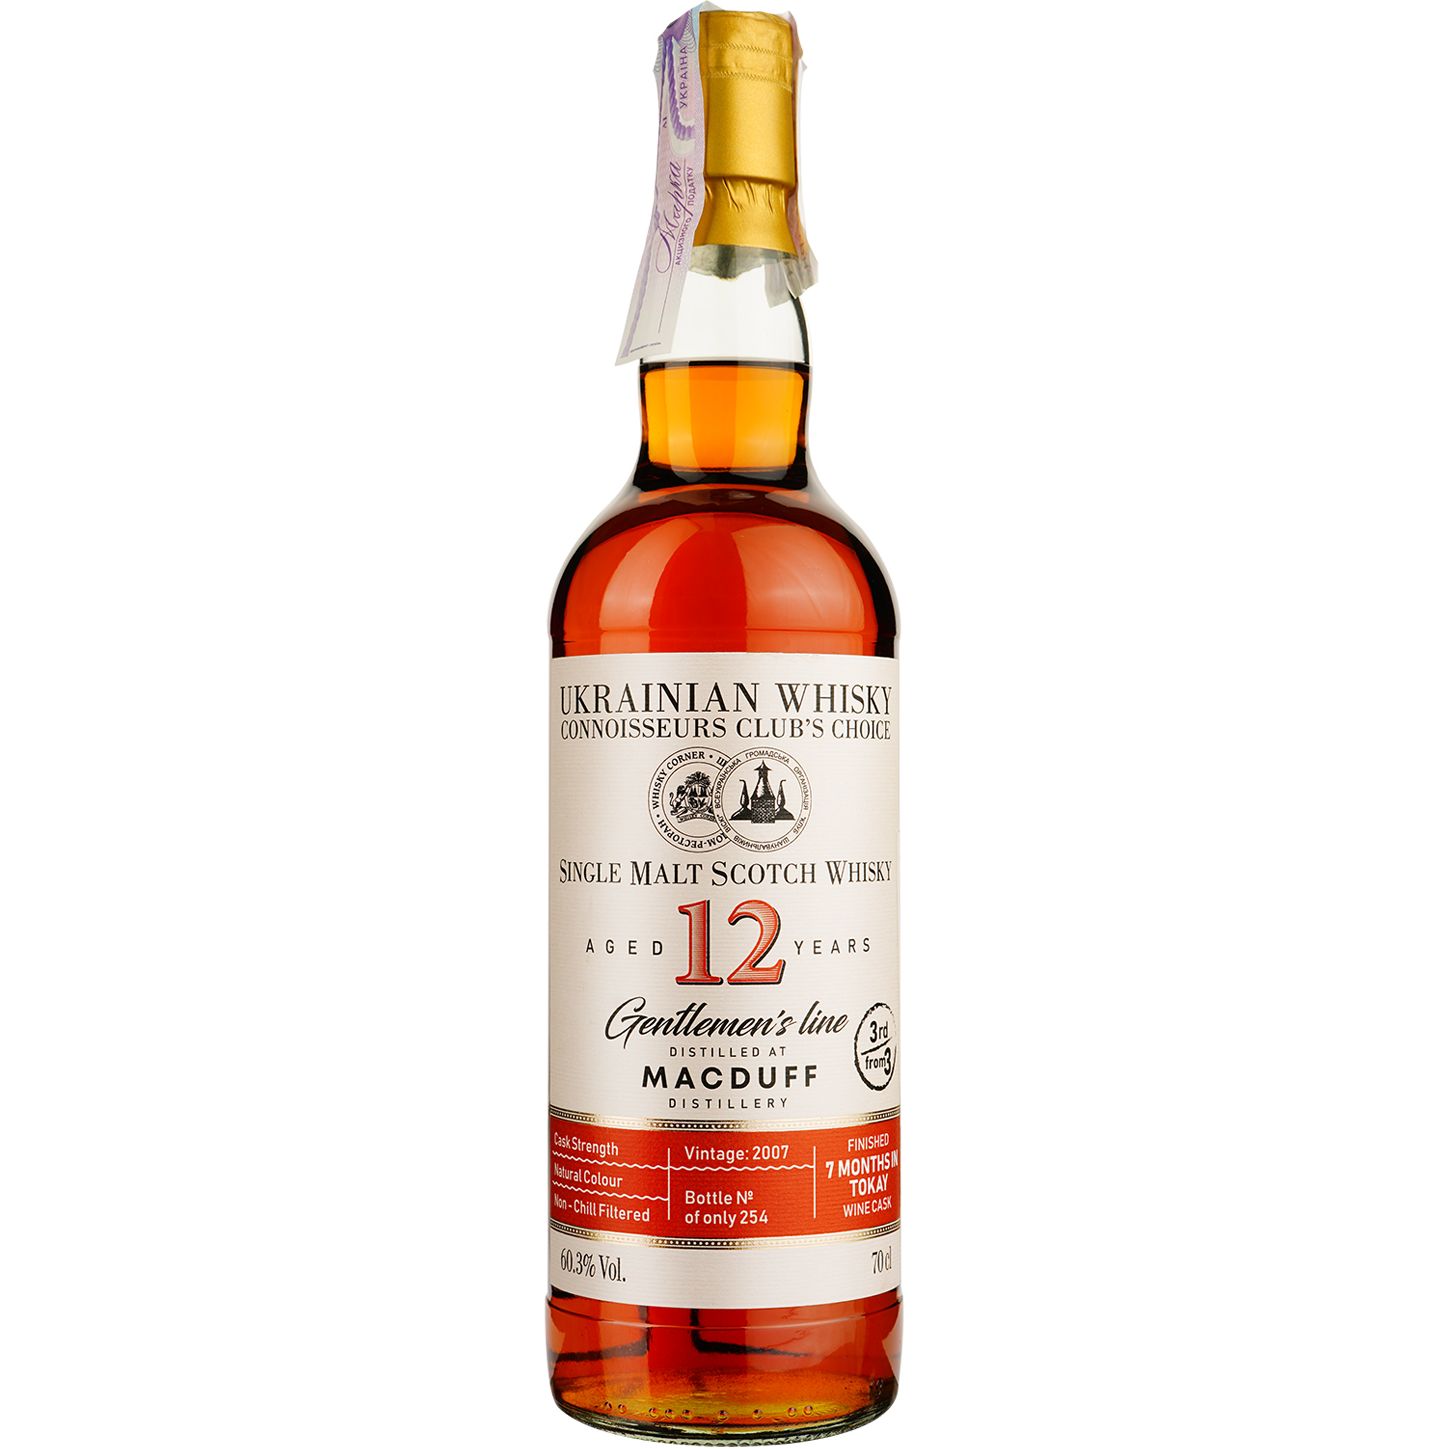 Віскі Macduff 12 Years Old Tokay Single Malt Scotch Whisky, у подарунковій упаковці, 60,3%, 0,7 л - фото 2